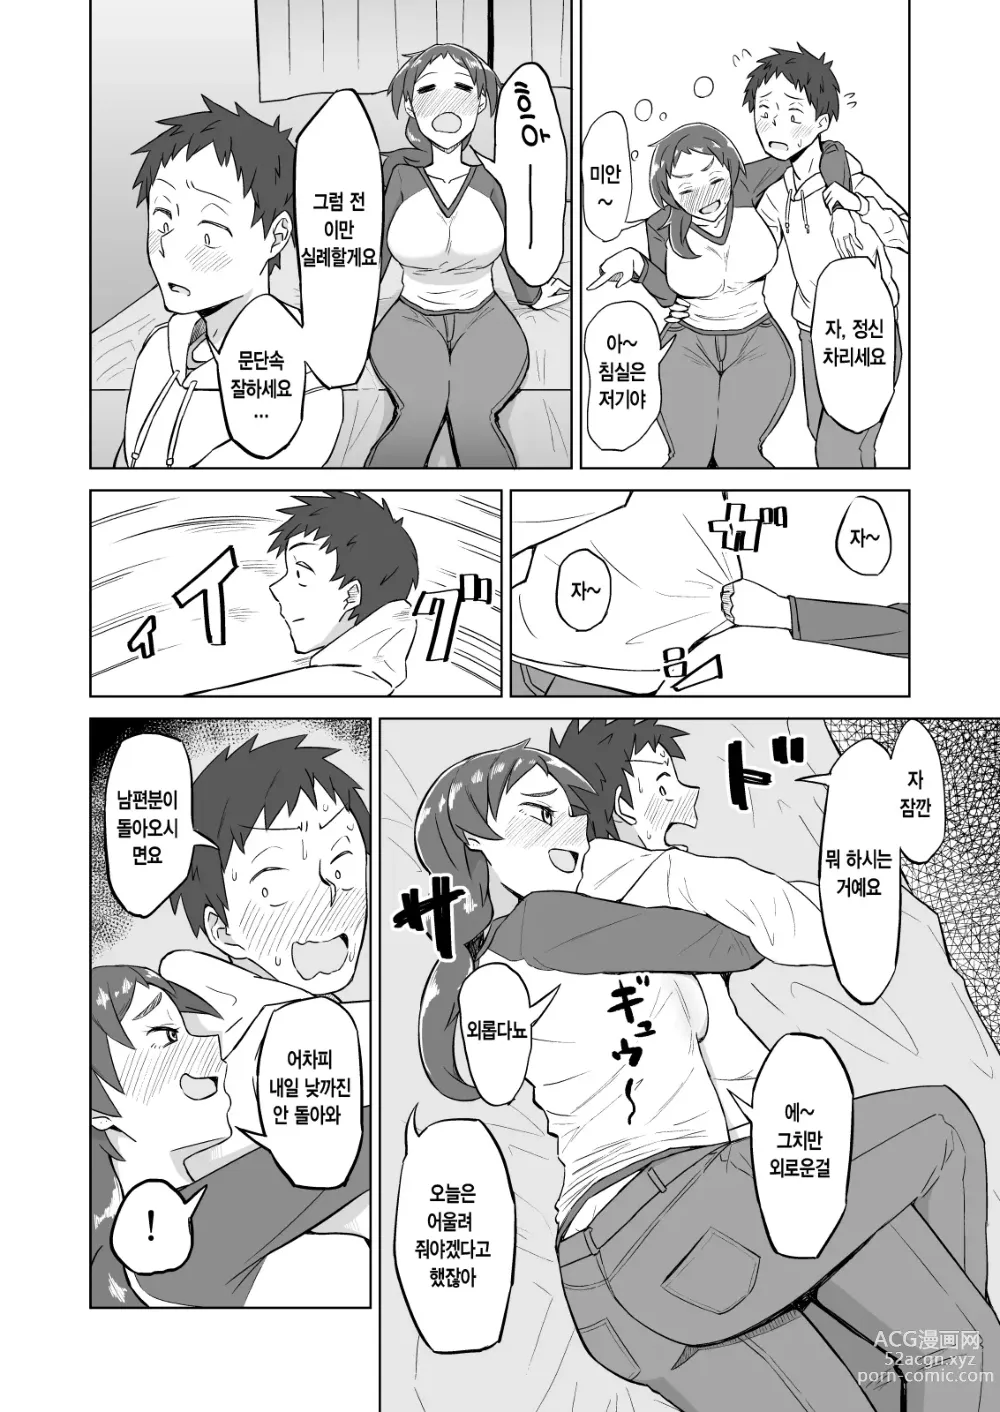 Page 5 of doujinshi 옆집 유부녀에게 저녁식사에 초대받았더니 욕구불만으로 SEX해버린 이야기